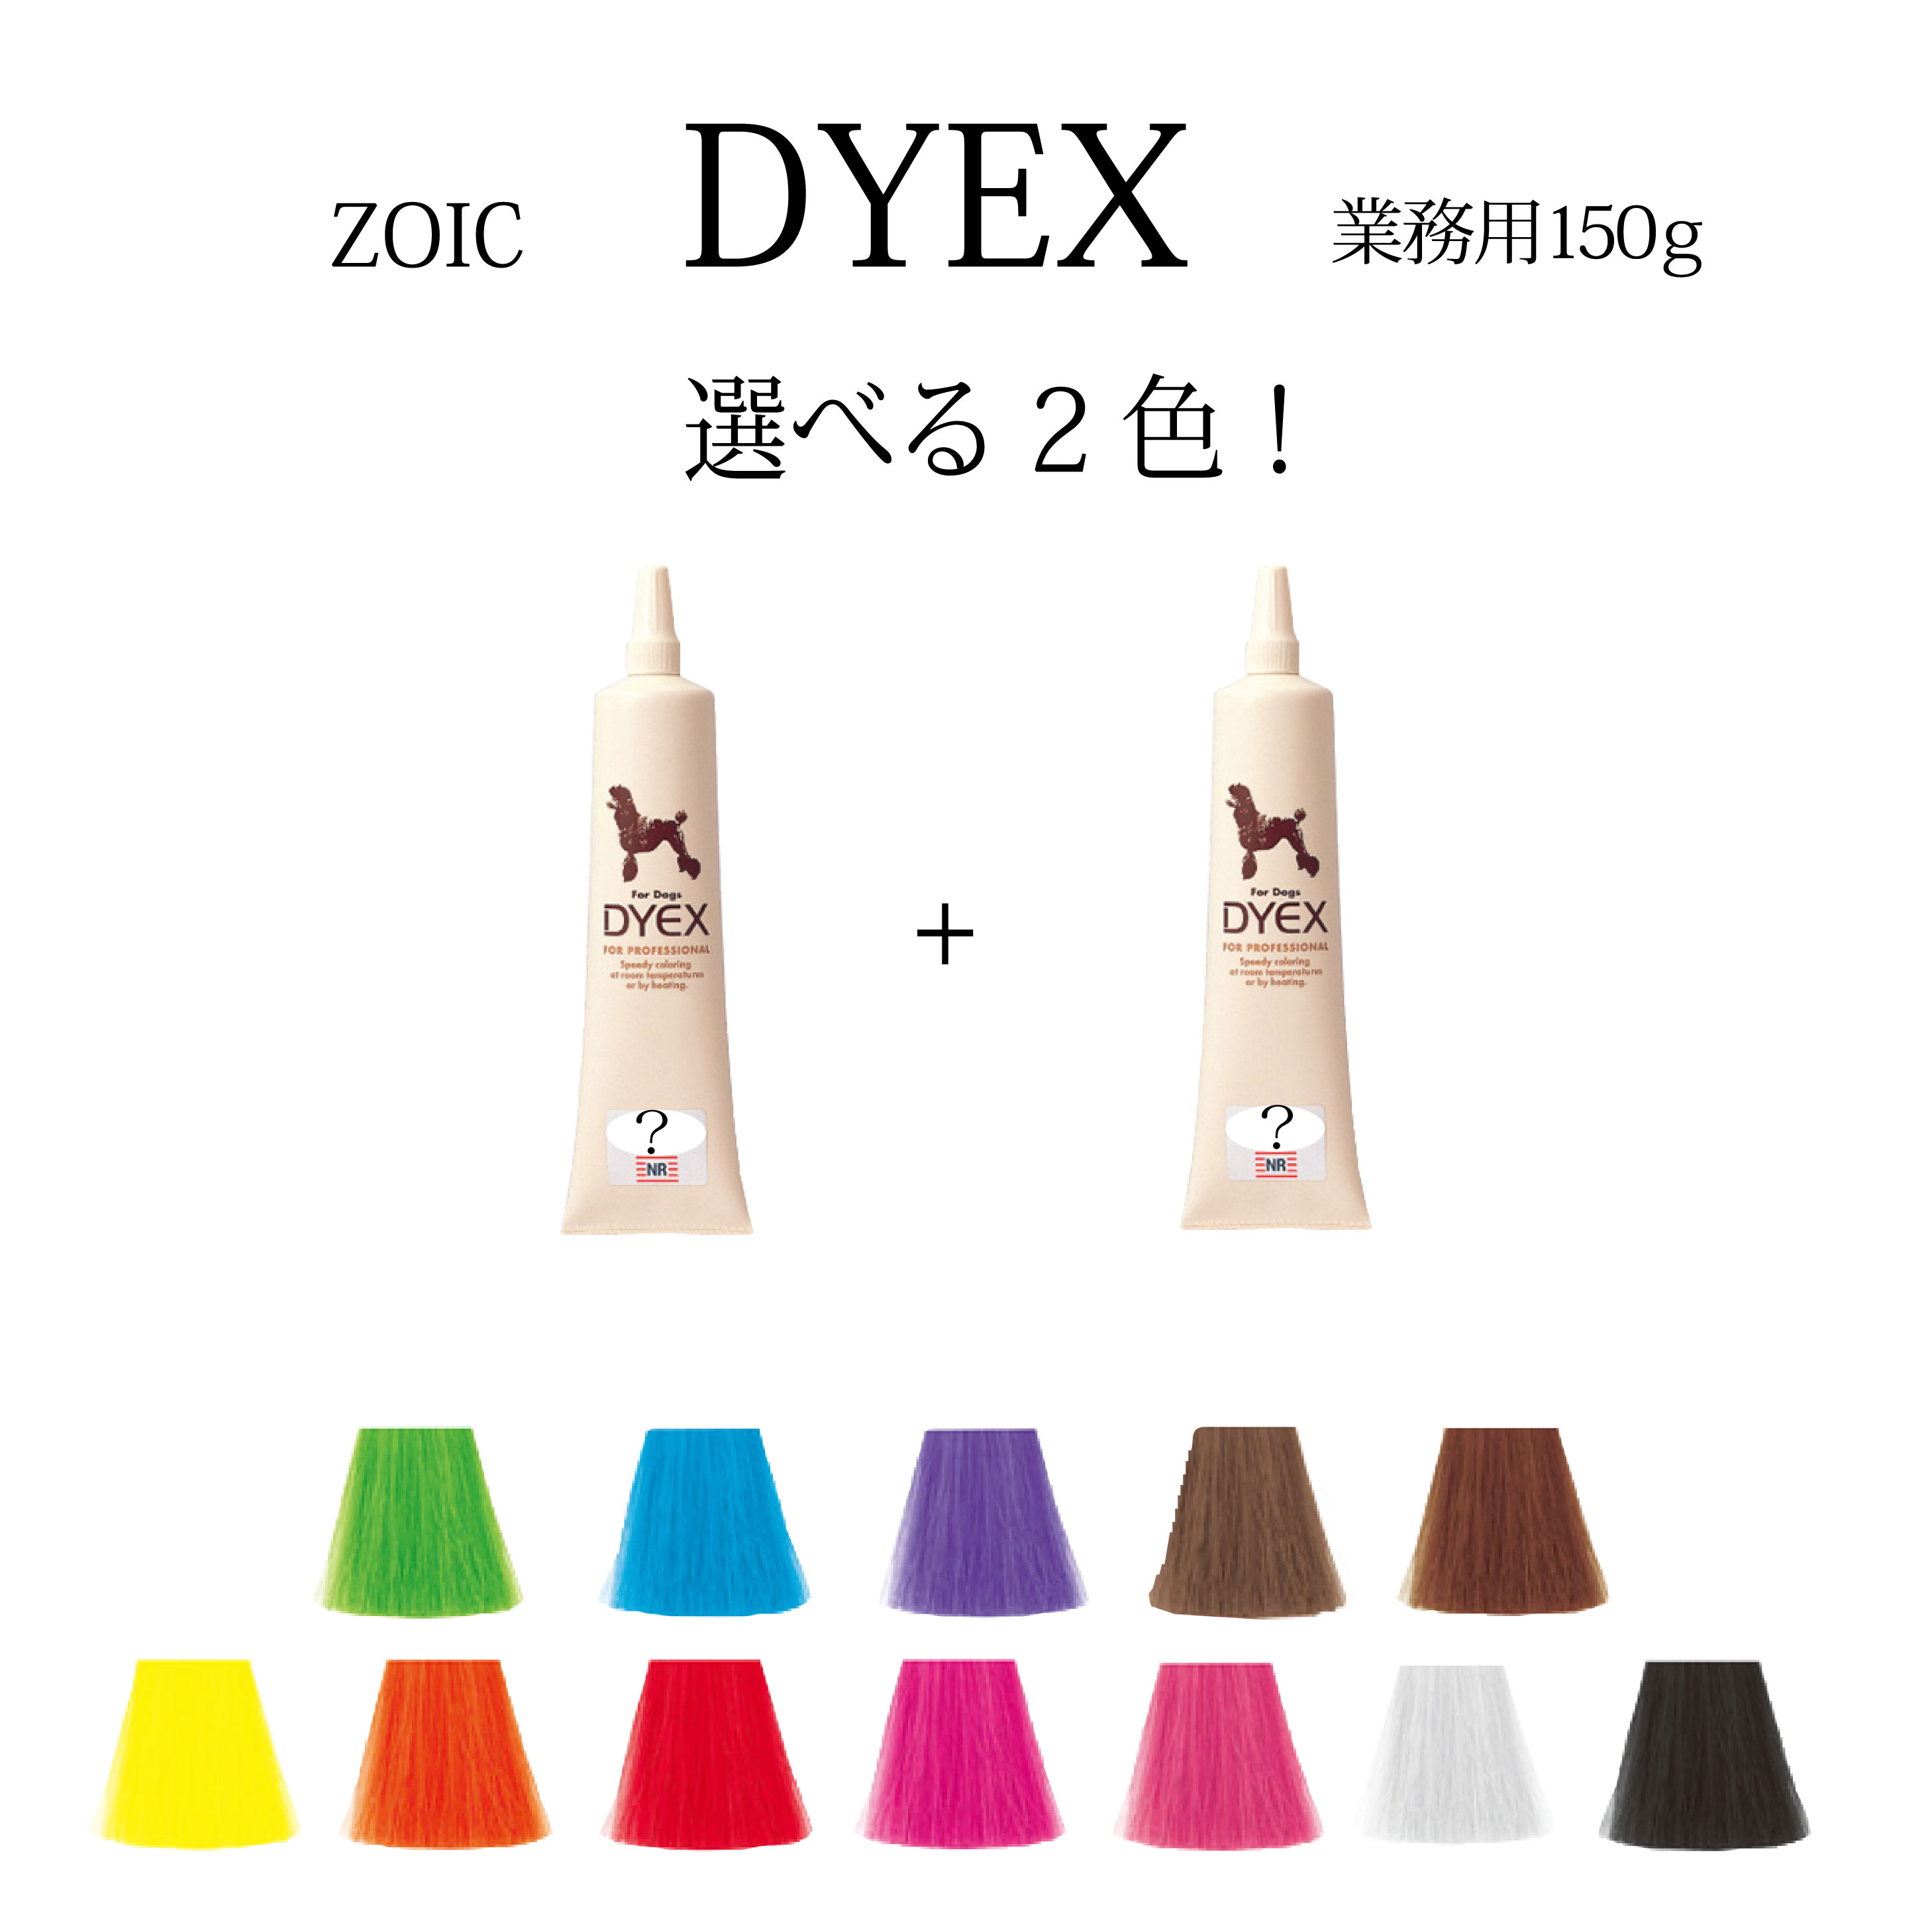 日本全国 送料無料 毛染めペット用品トリマーペットサロン ゾイック ダイックス DYEX 選べる2色 大人気 150ｇペット用 カラーリング剤送料無料